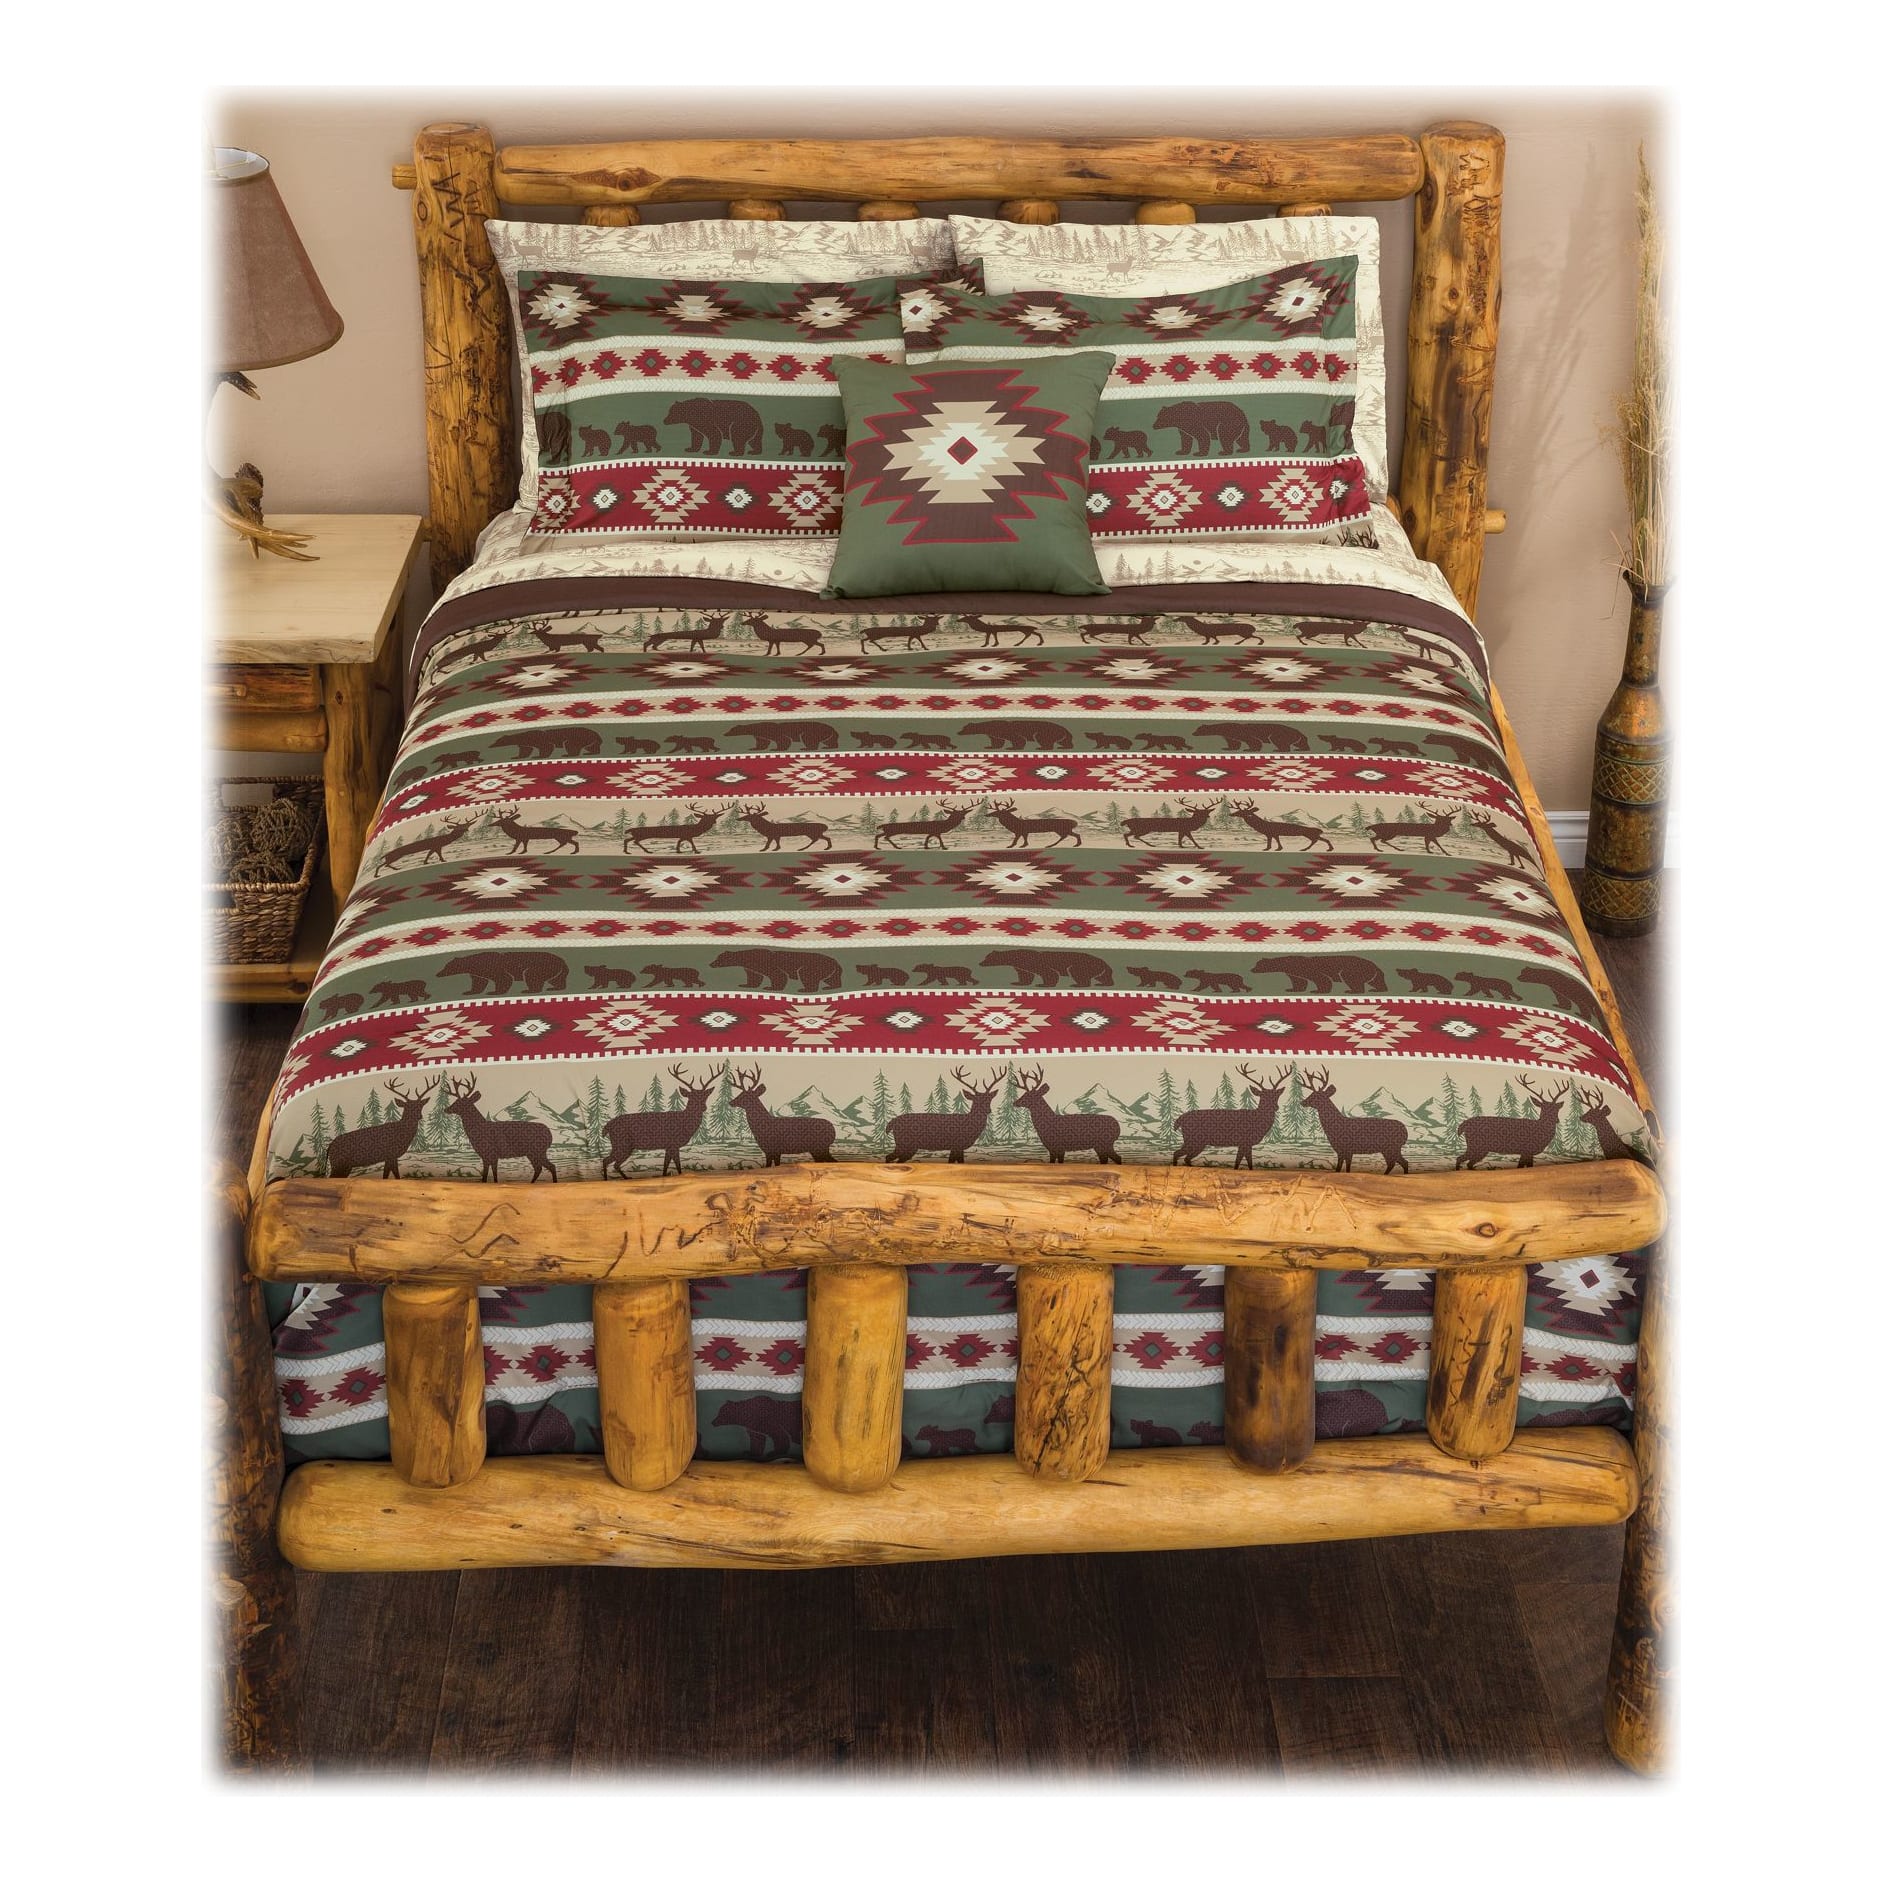 Mainstays Comforter Full/Queen Quilt Southwestern Aztec